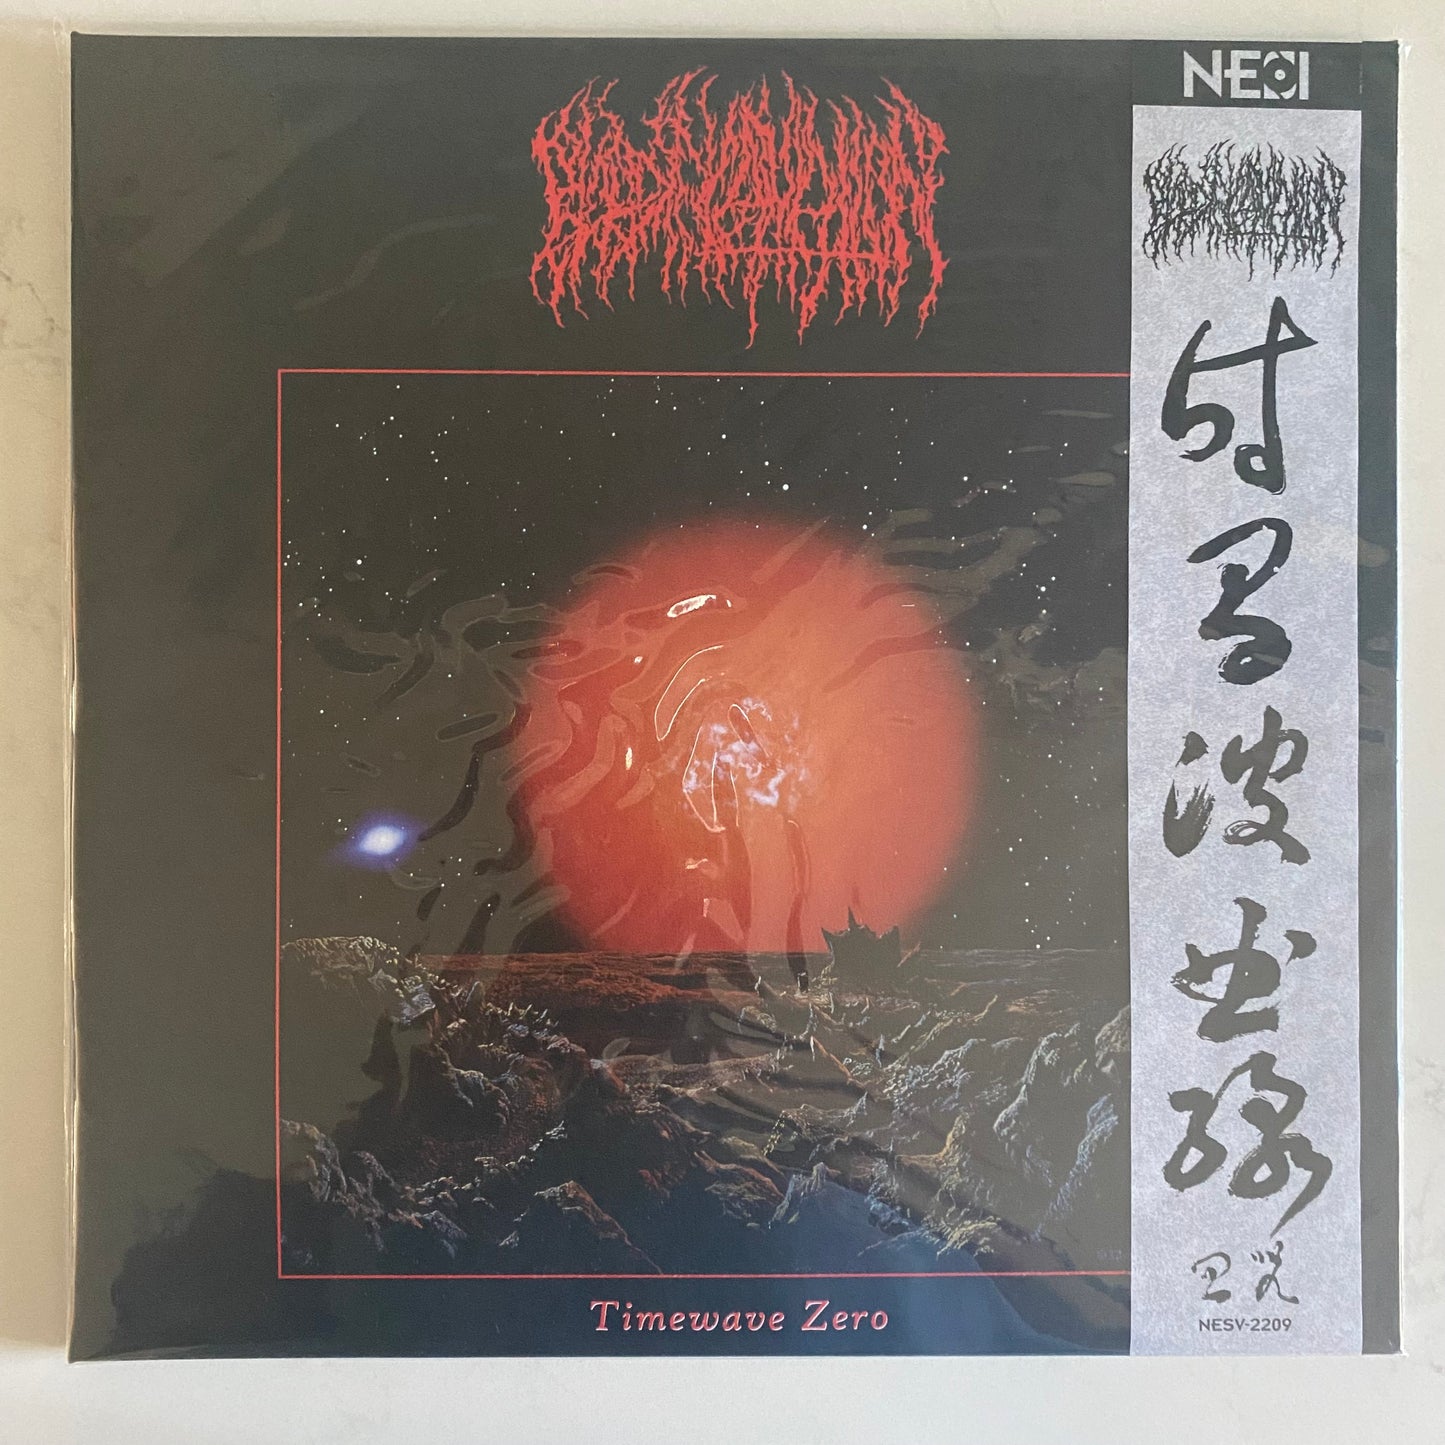 Blood Incantation - Timewave Zero (12", EP, Ltd, RP, Red). ROCK